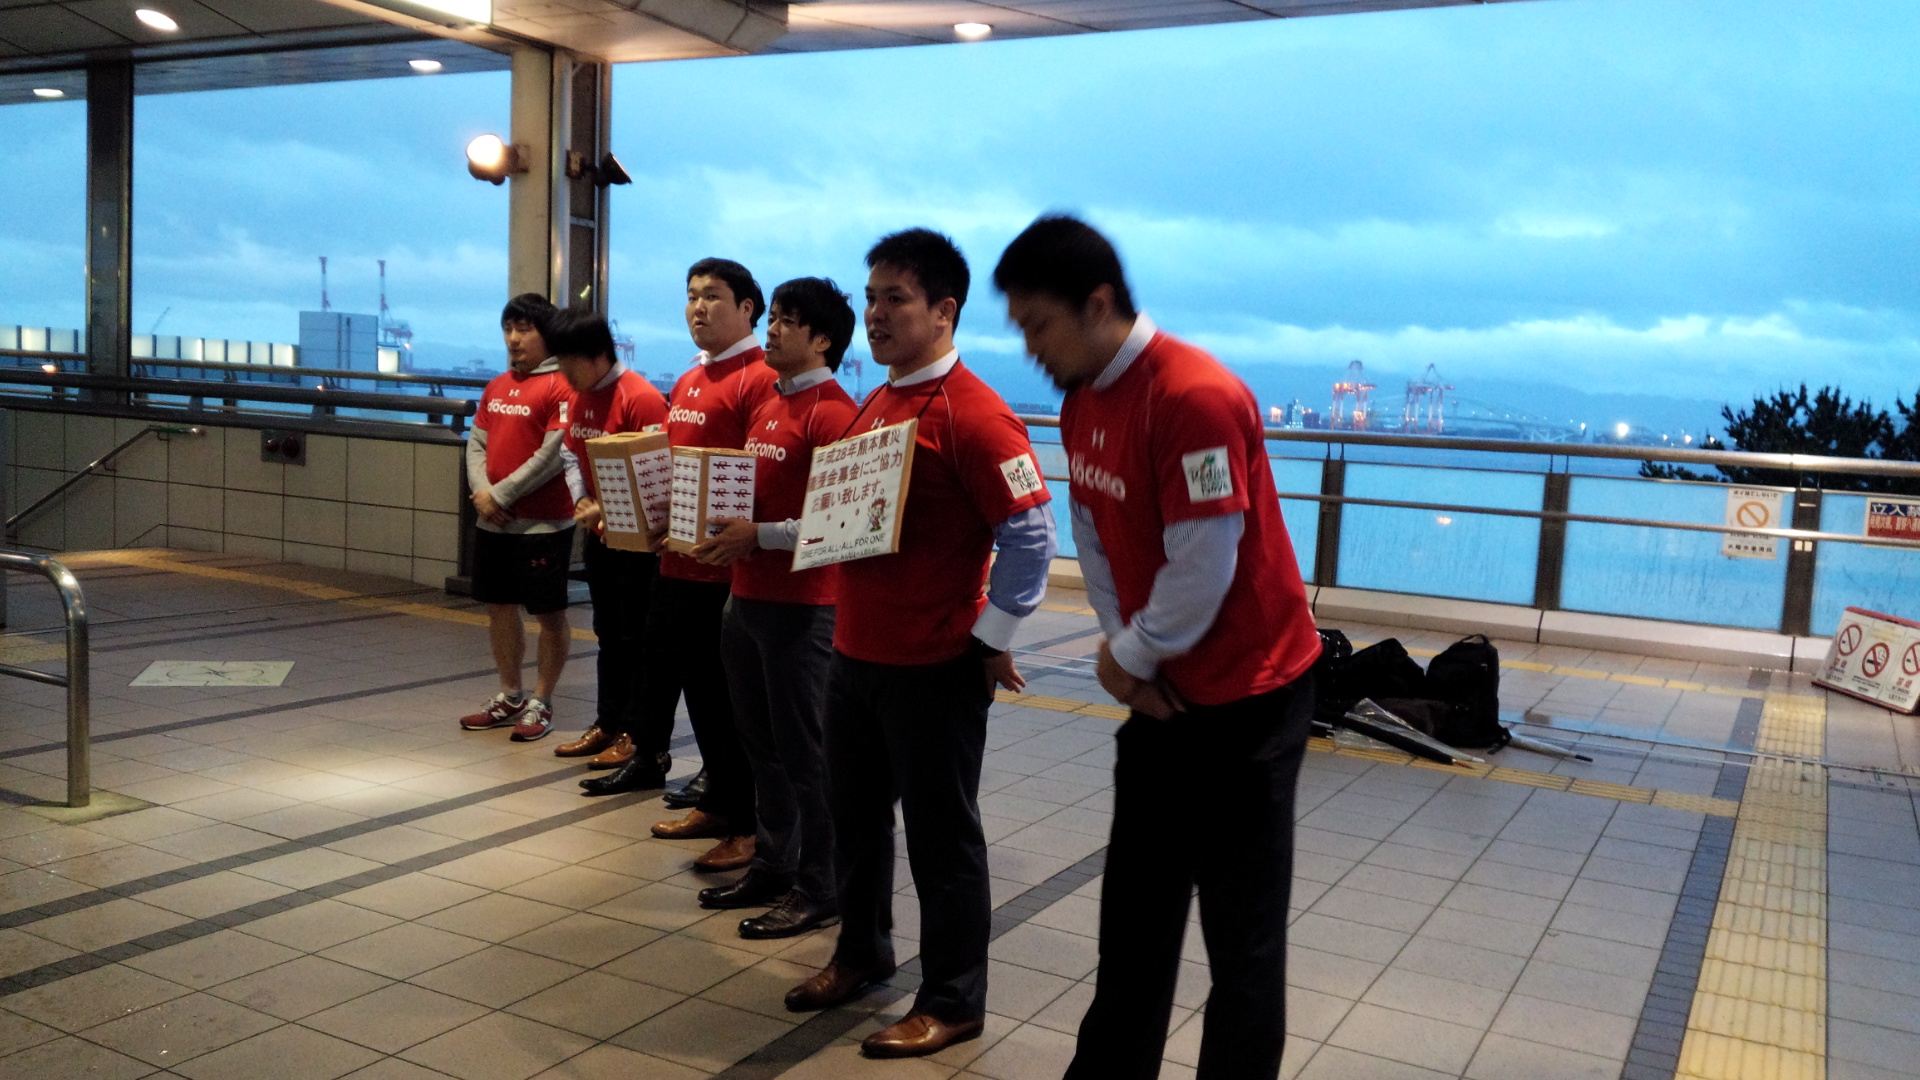 【ご報告】レッドハリケーンズ選手が熊本震災に伴う街頭募金活動を行いました。